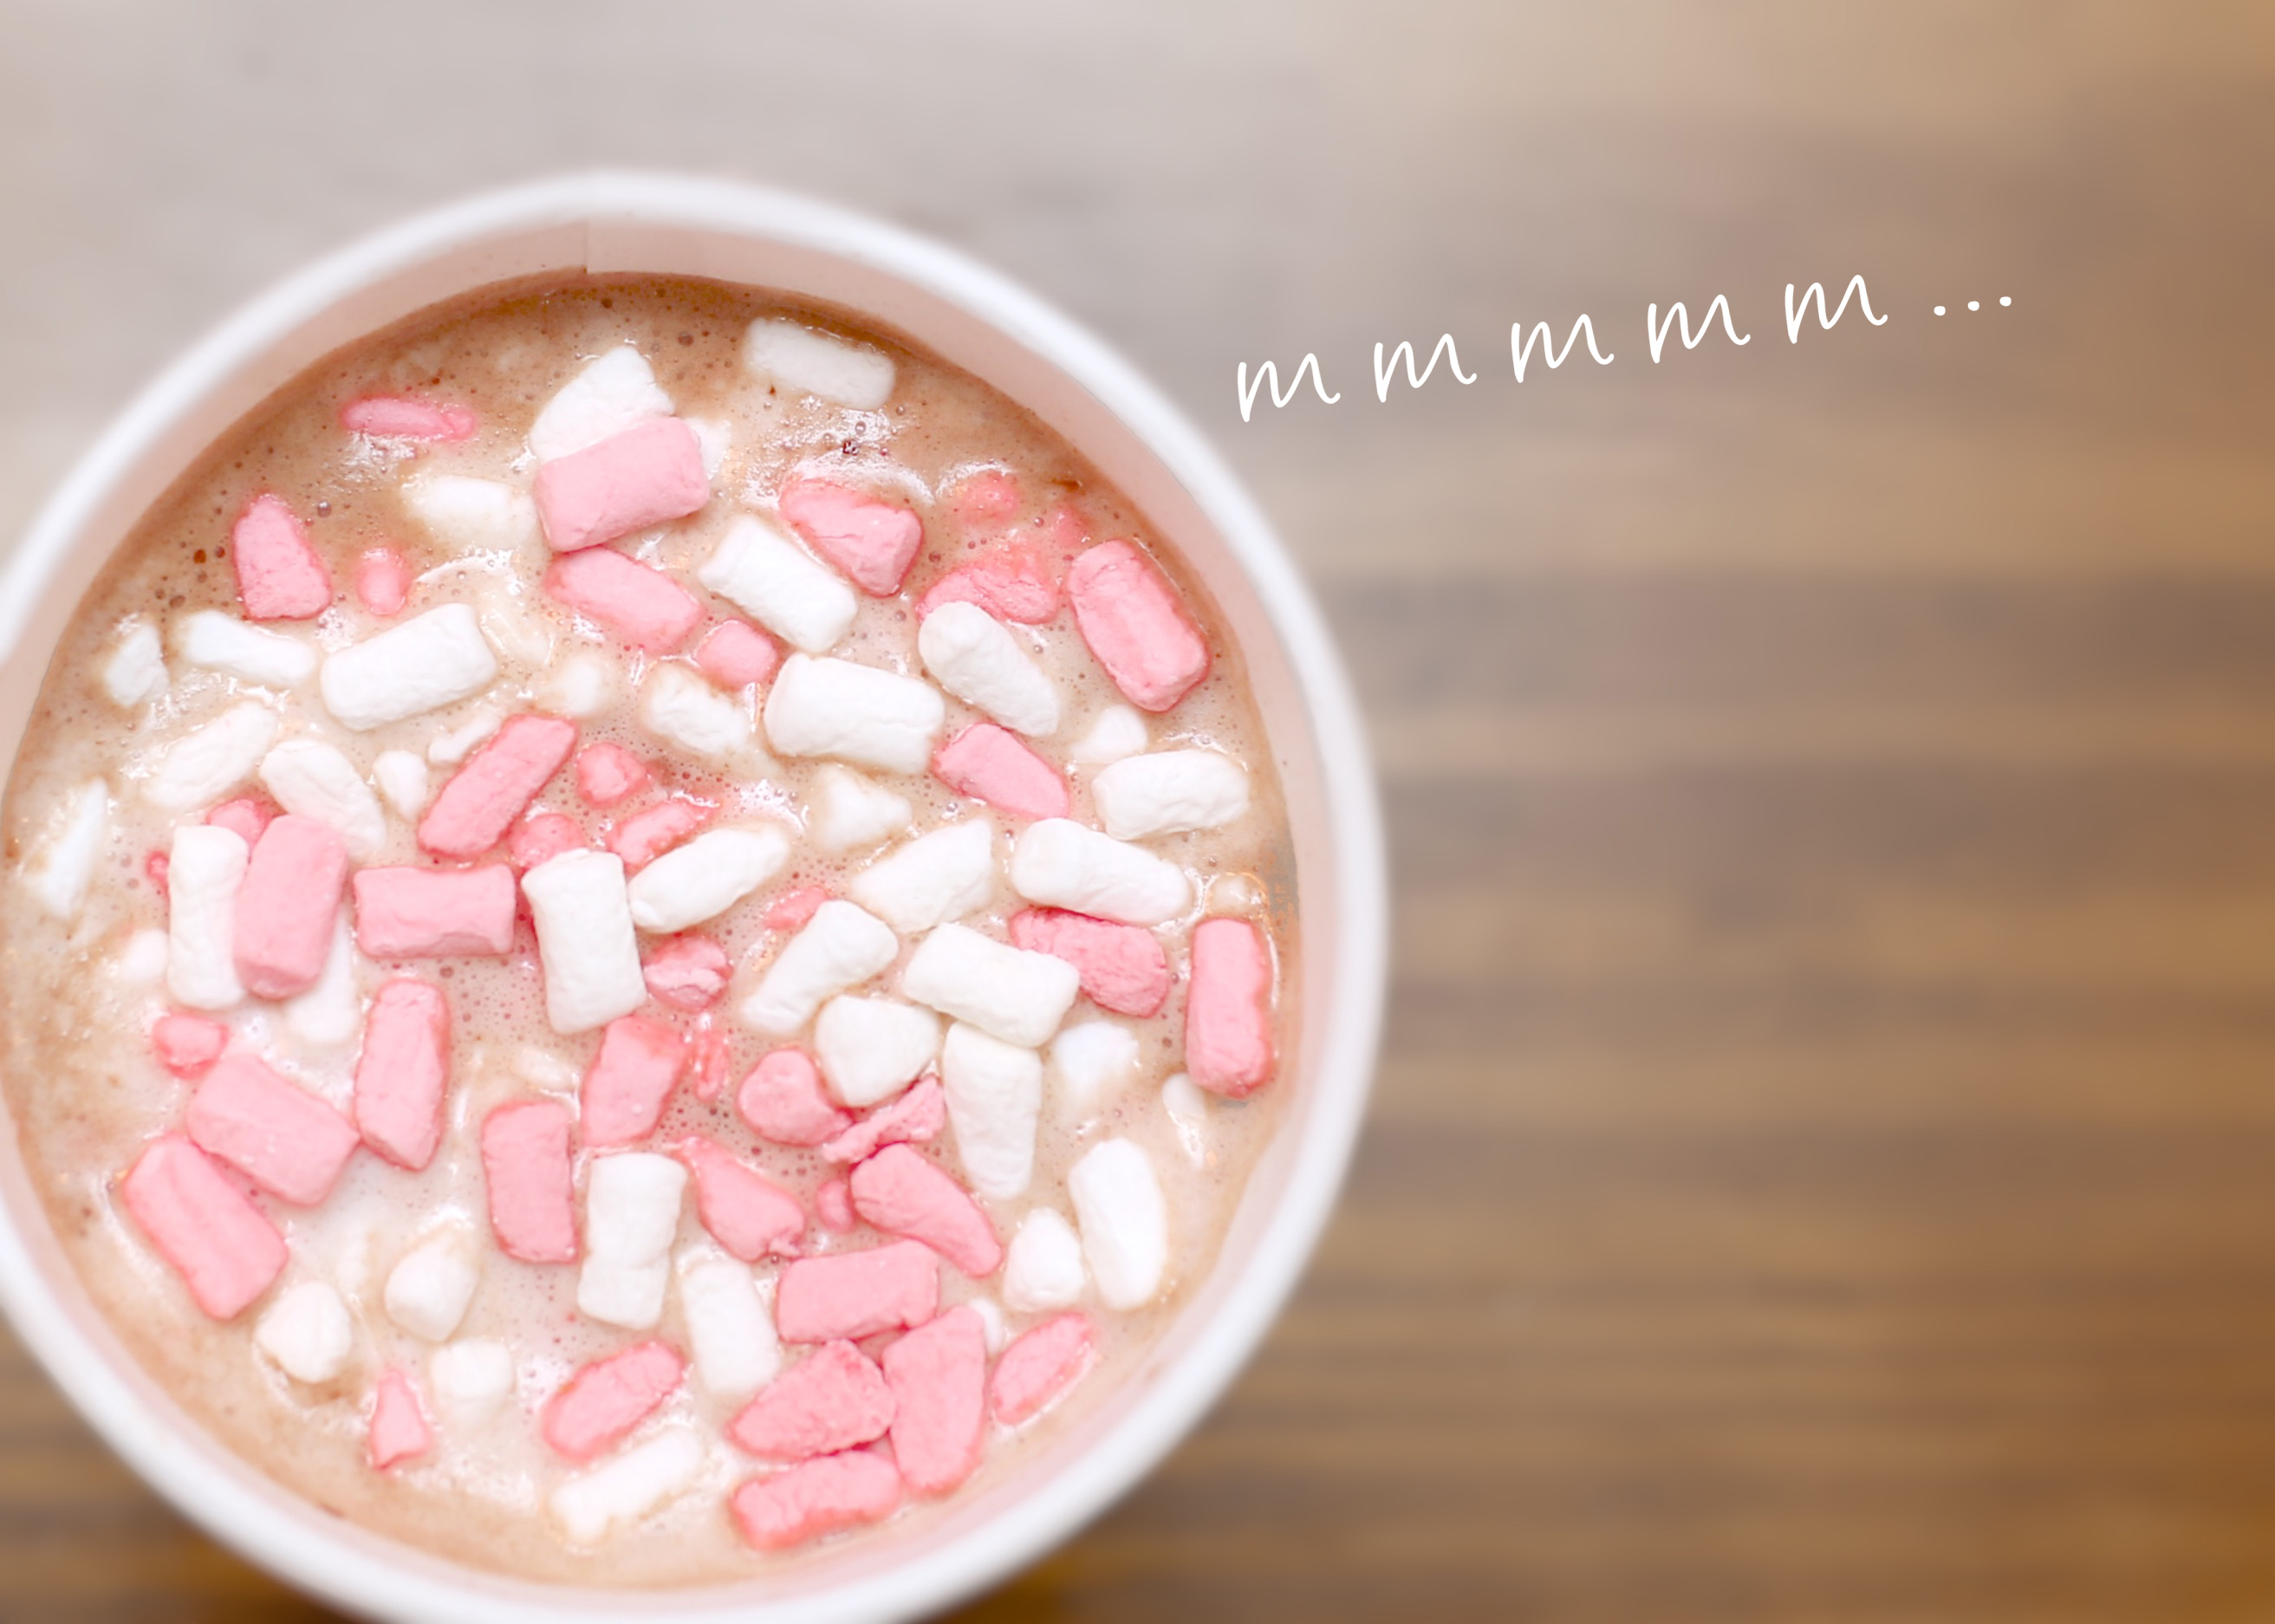 Hot Chocolate mmmm